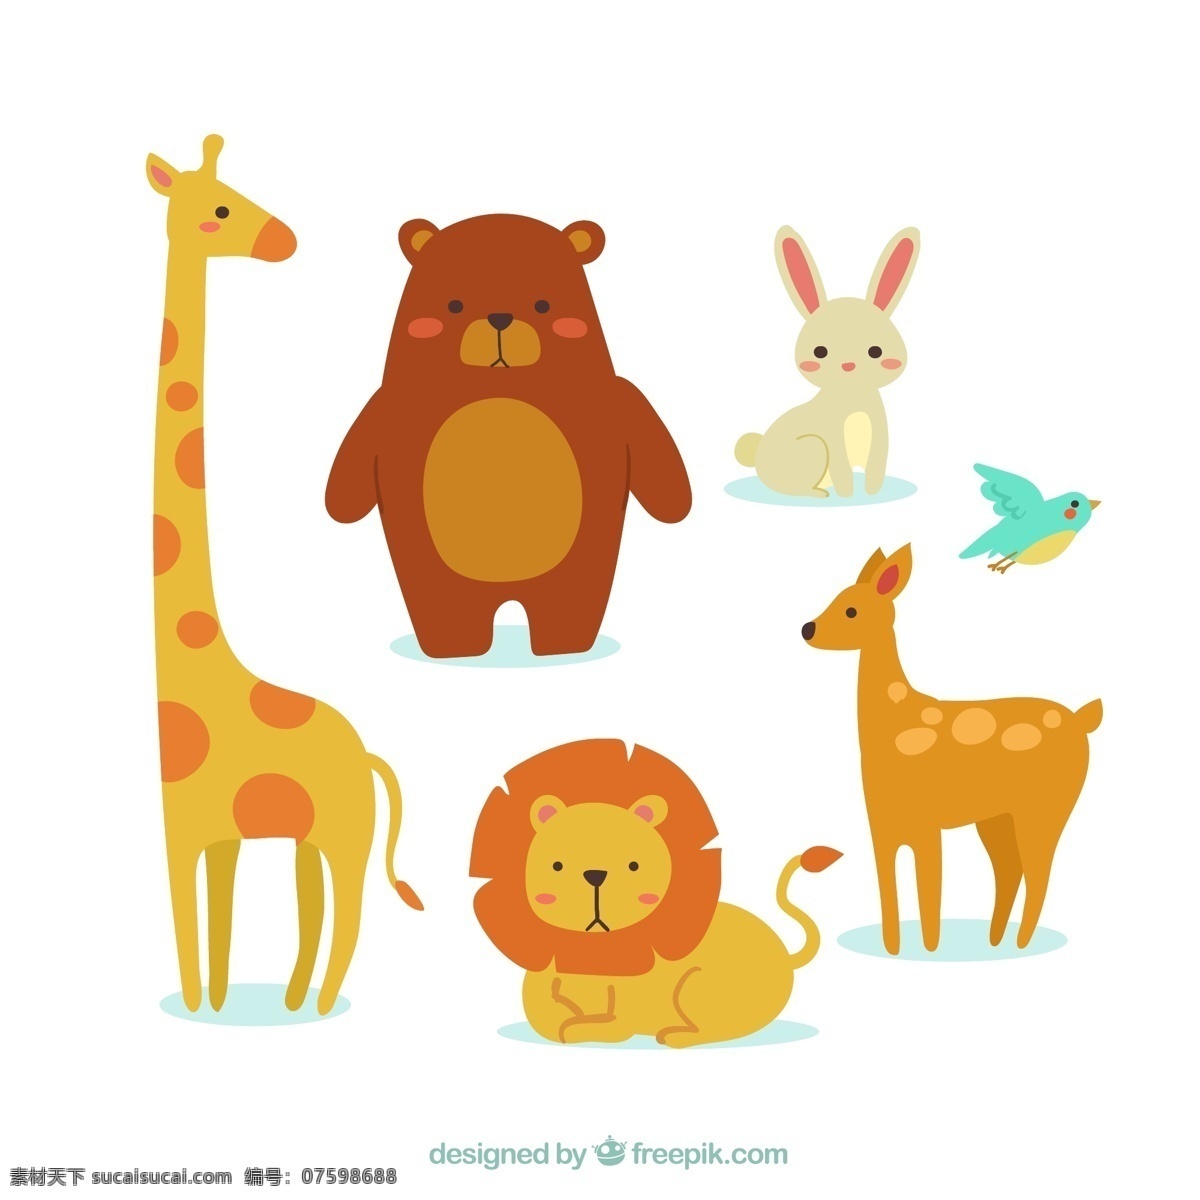 五颜六色 扁平 动物 自然 卡通 鸟类 可爱 狮子 熊 七彩 鹿 扁 兔 平面设计 长颈鹿 可爱动物 背包 卡通动物 野生 收藏